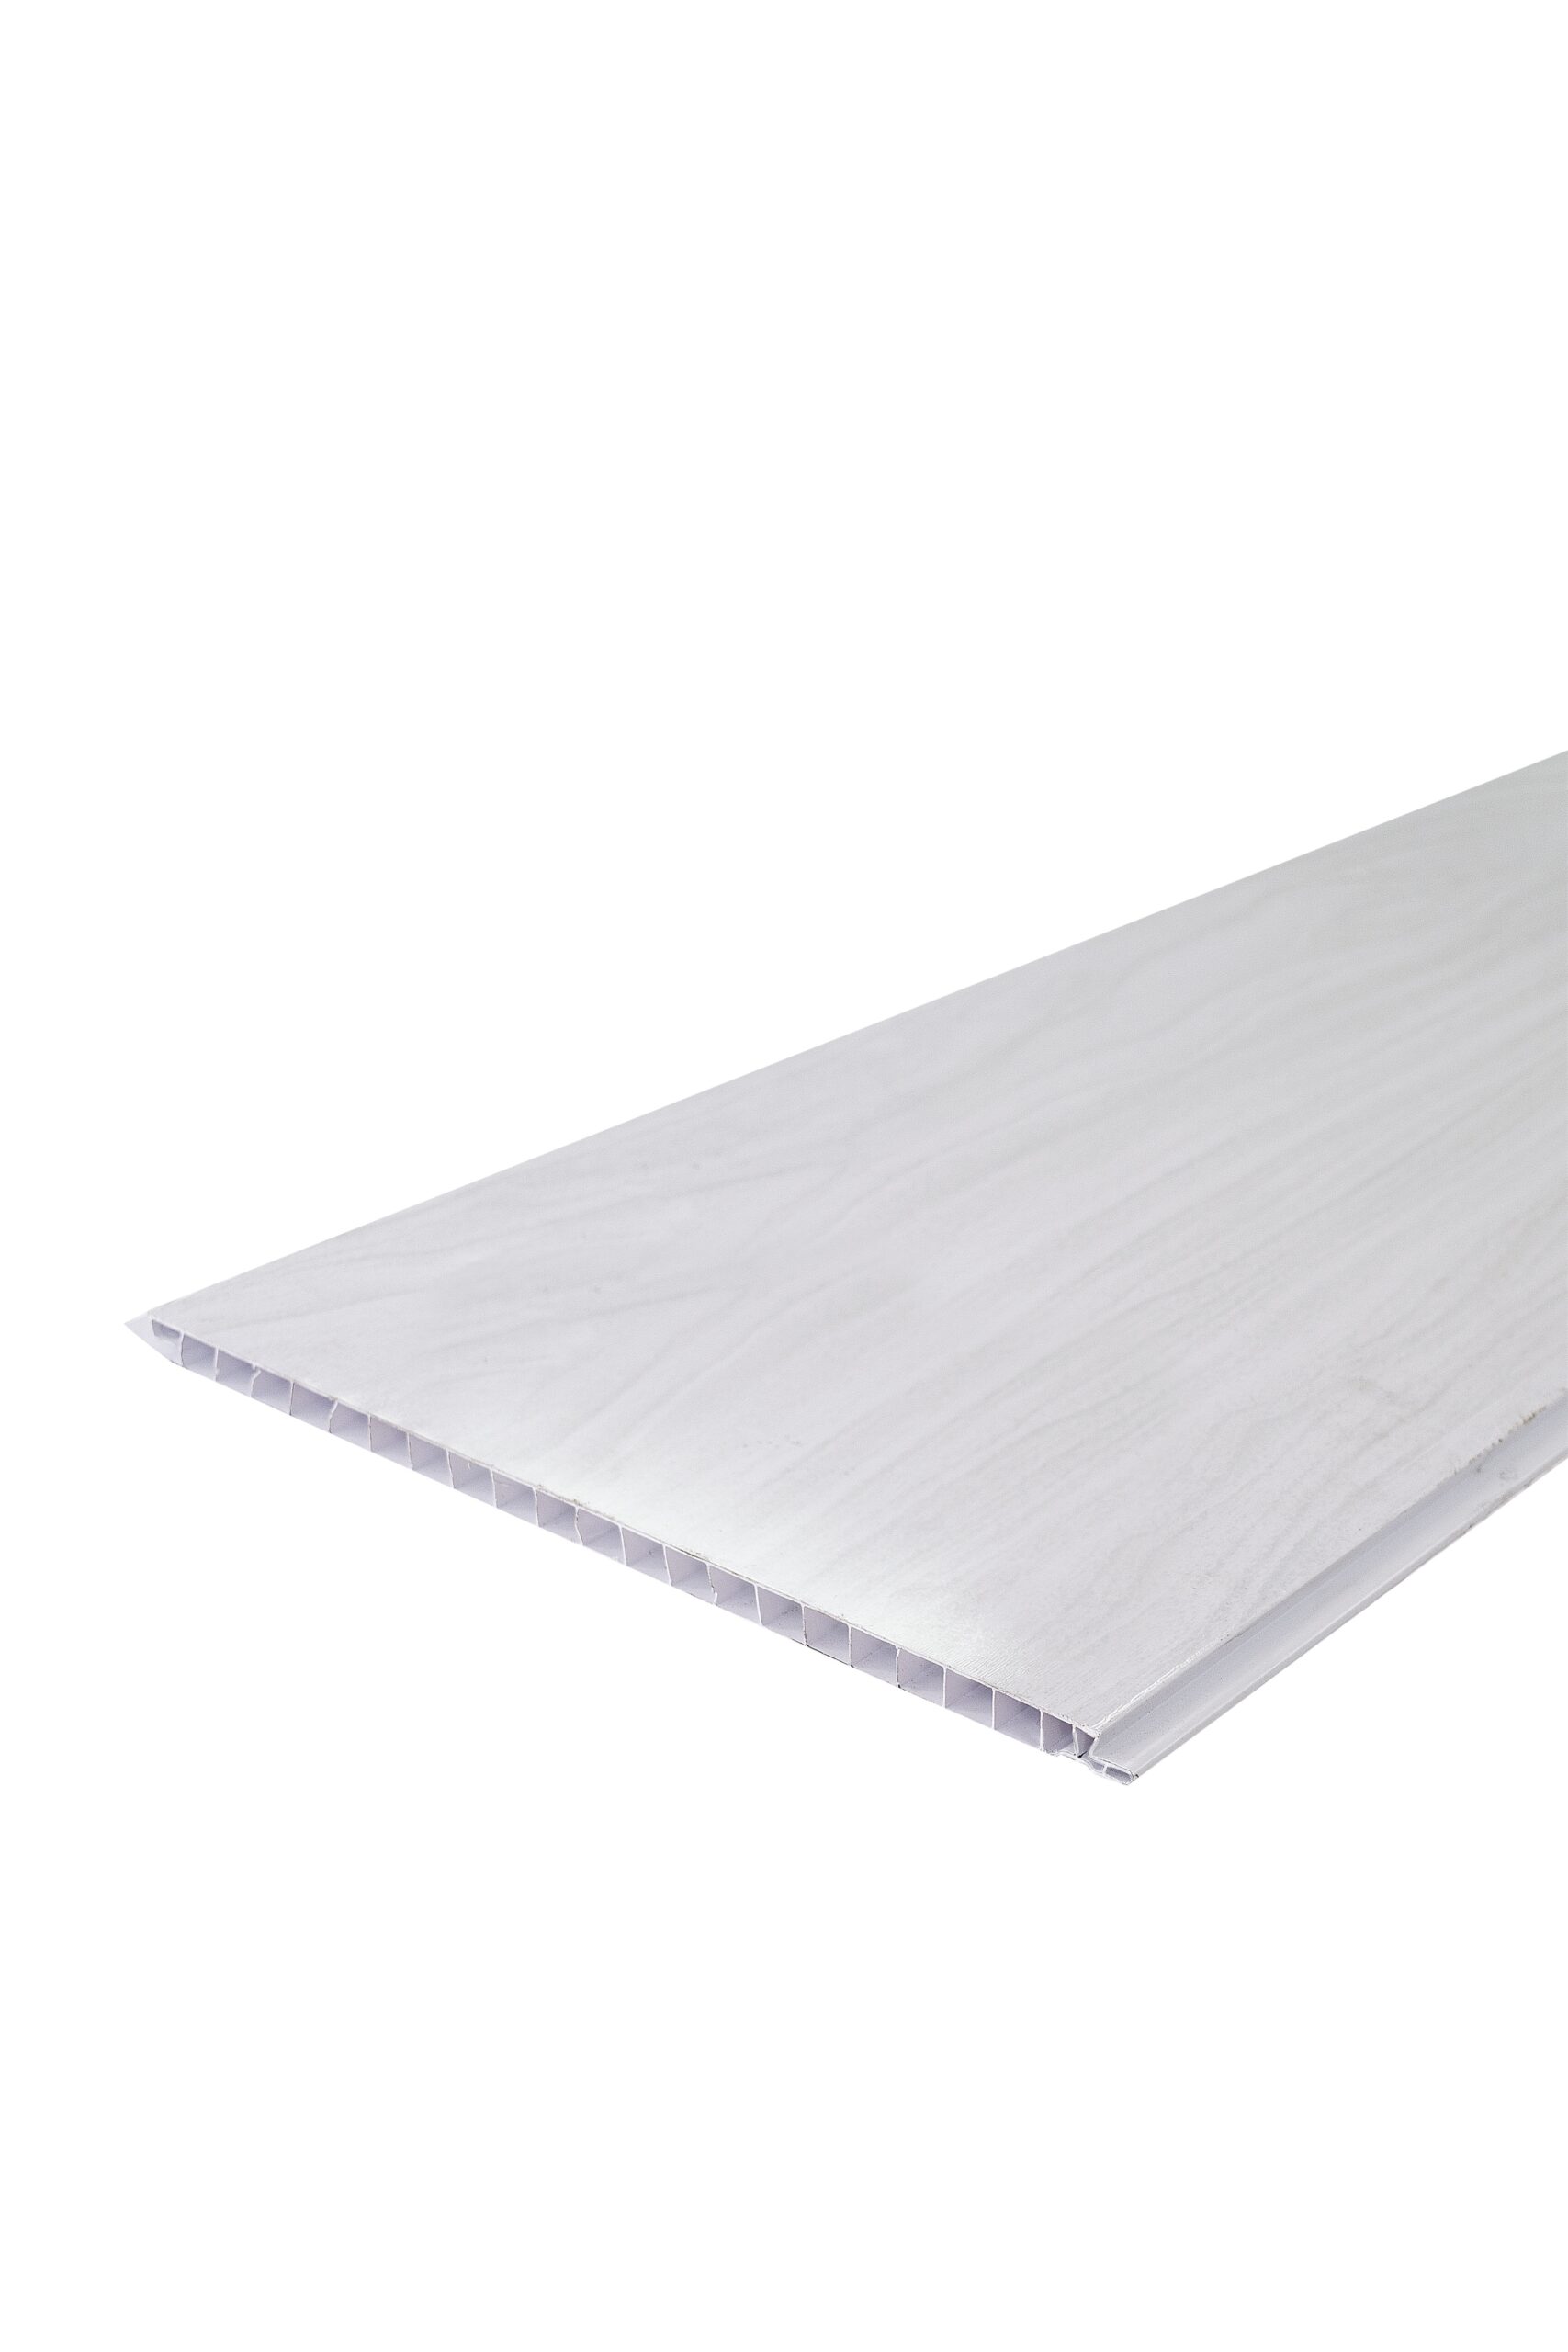 Perfil Perimetral Para Terminación De PVC Estilo Colonial Color Blanco (6  mts) - ARTIPLAN